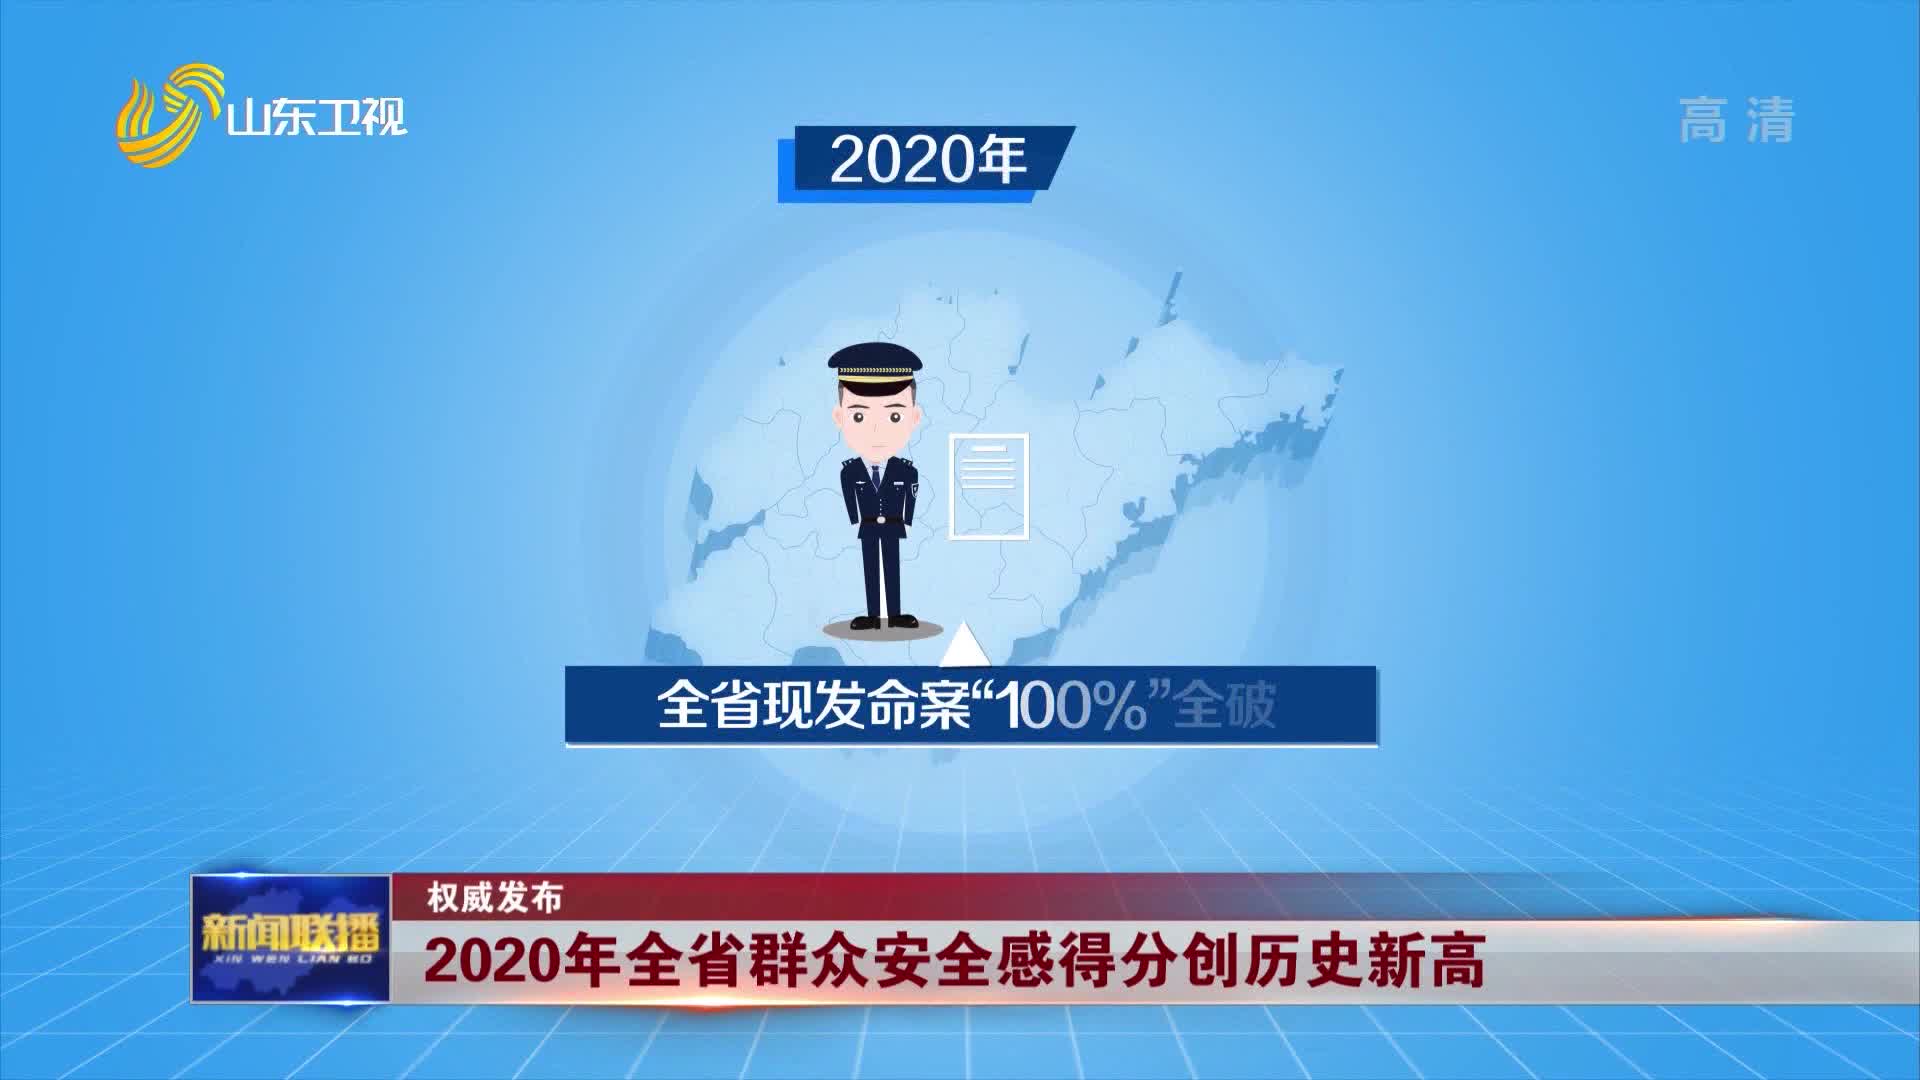 【权威发布】2020年全省群众安全感得分创历史新高